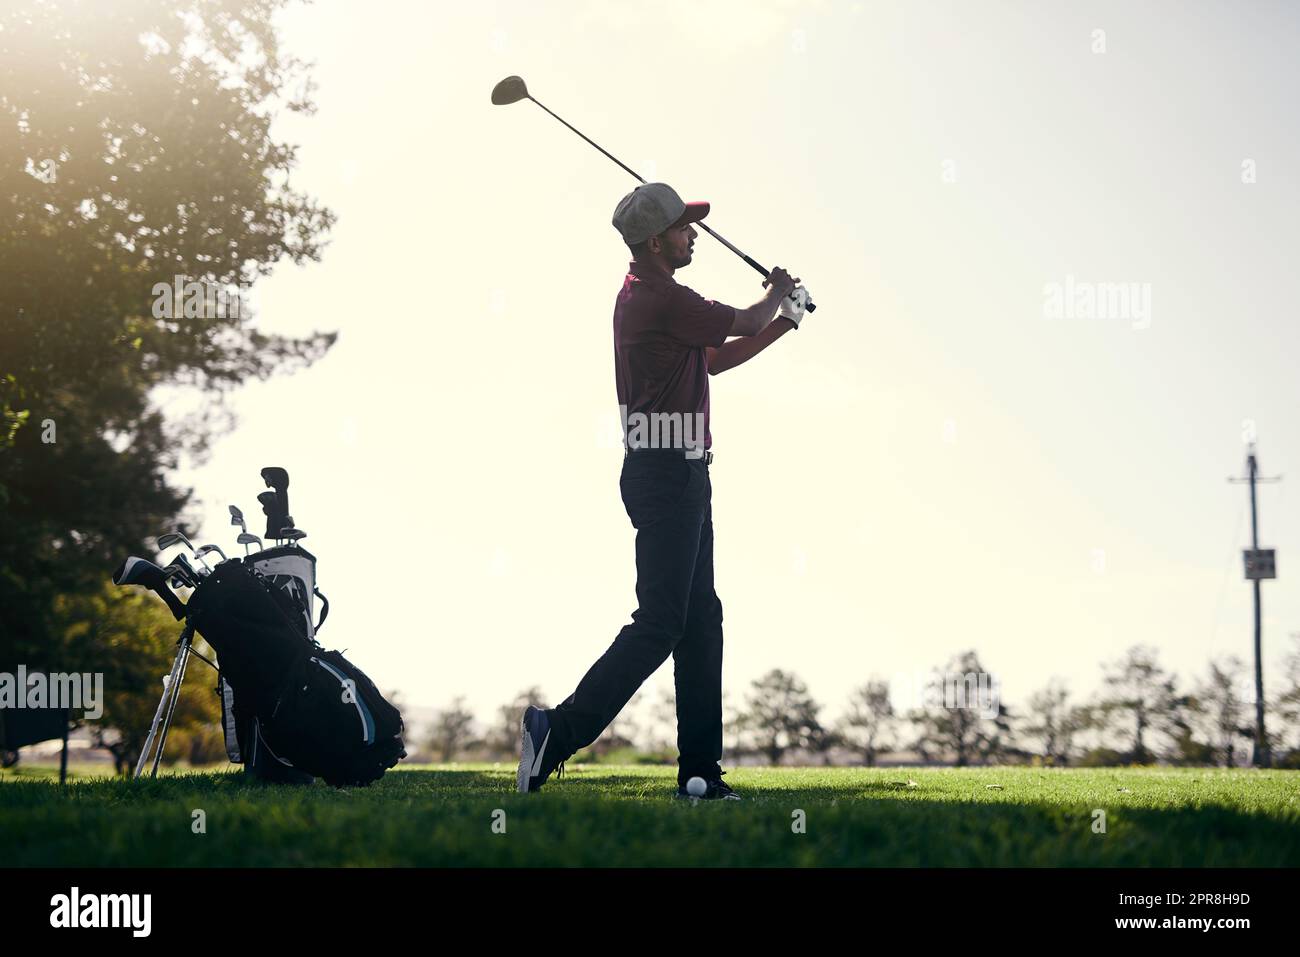 Quelle journée pour le golf. Un jeune golfeur masculin sur le point de balancer et de jouer une balle avec son club de golf à l'extérieur sur un parcours. Banque D'Images